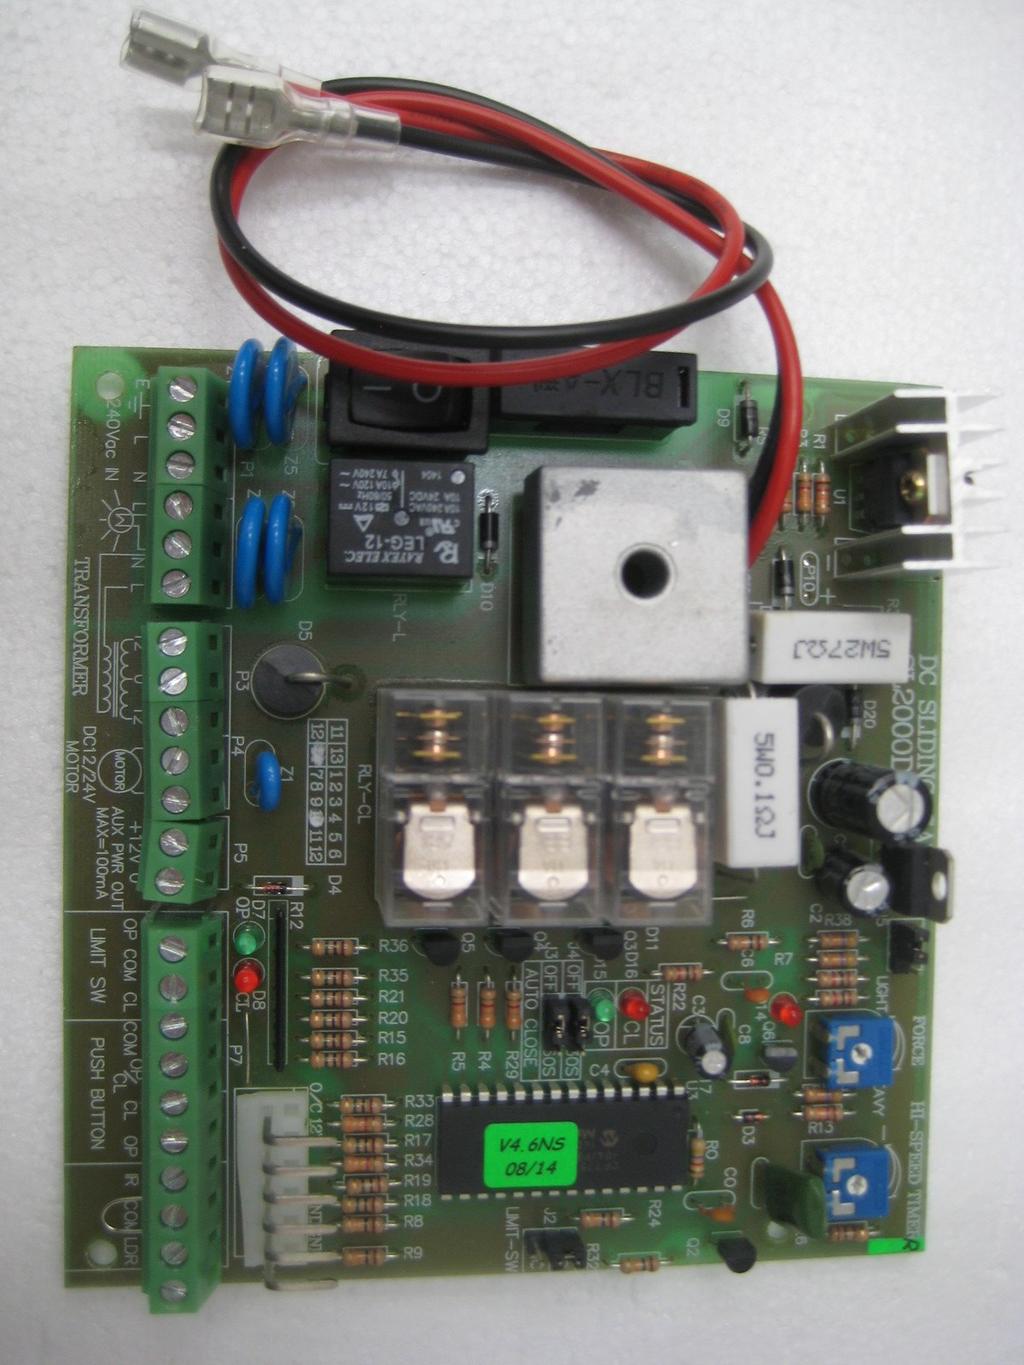 SL 2000 Circuit Board Data Sheet DIY Automatic Gate Kits Solar & Low Voltage Specialists PH 1800 111 930 info@gforceautogates.com.